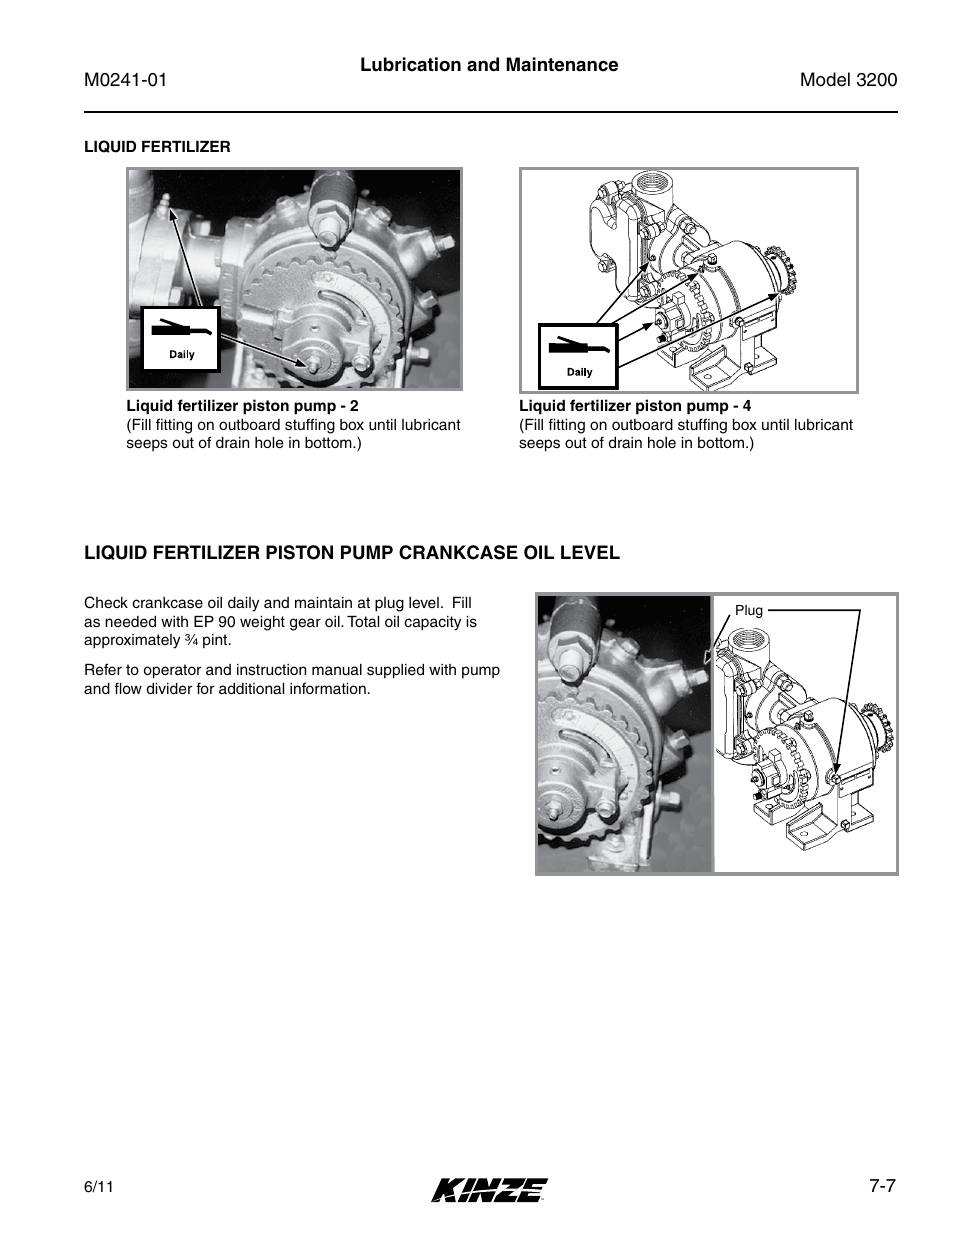 Liquid fertilizer piston pump crankcase oil level | Kinze 3200 Wing-Fold Planter Rev. 7/14 User Manual | Page 147 / 192